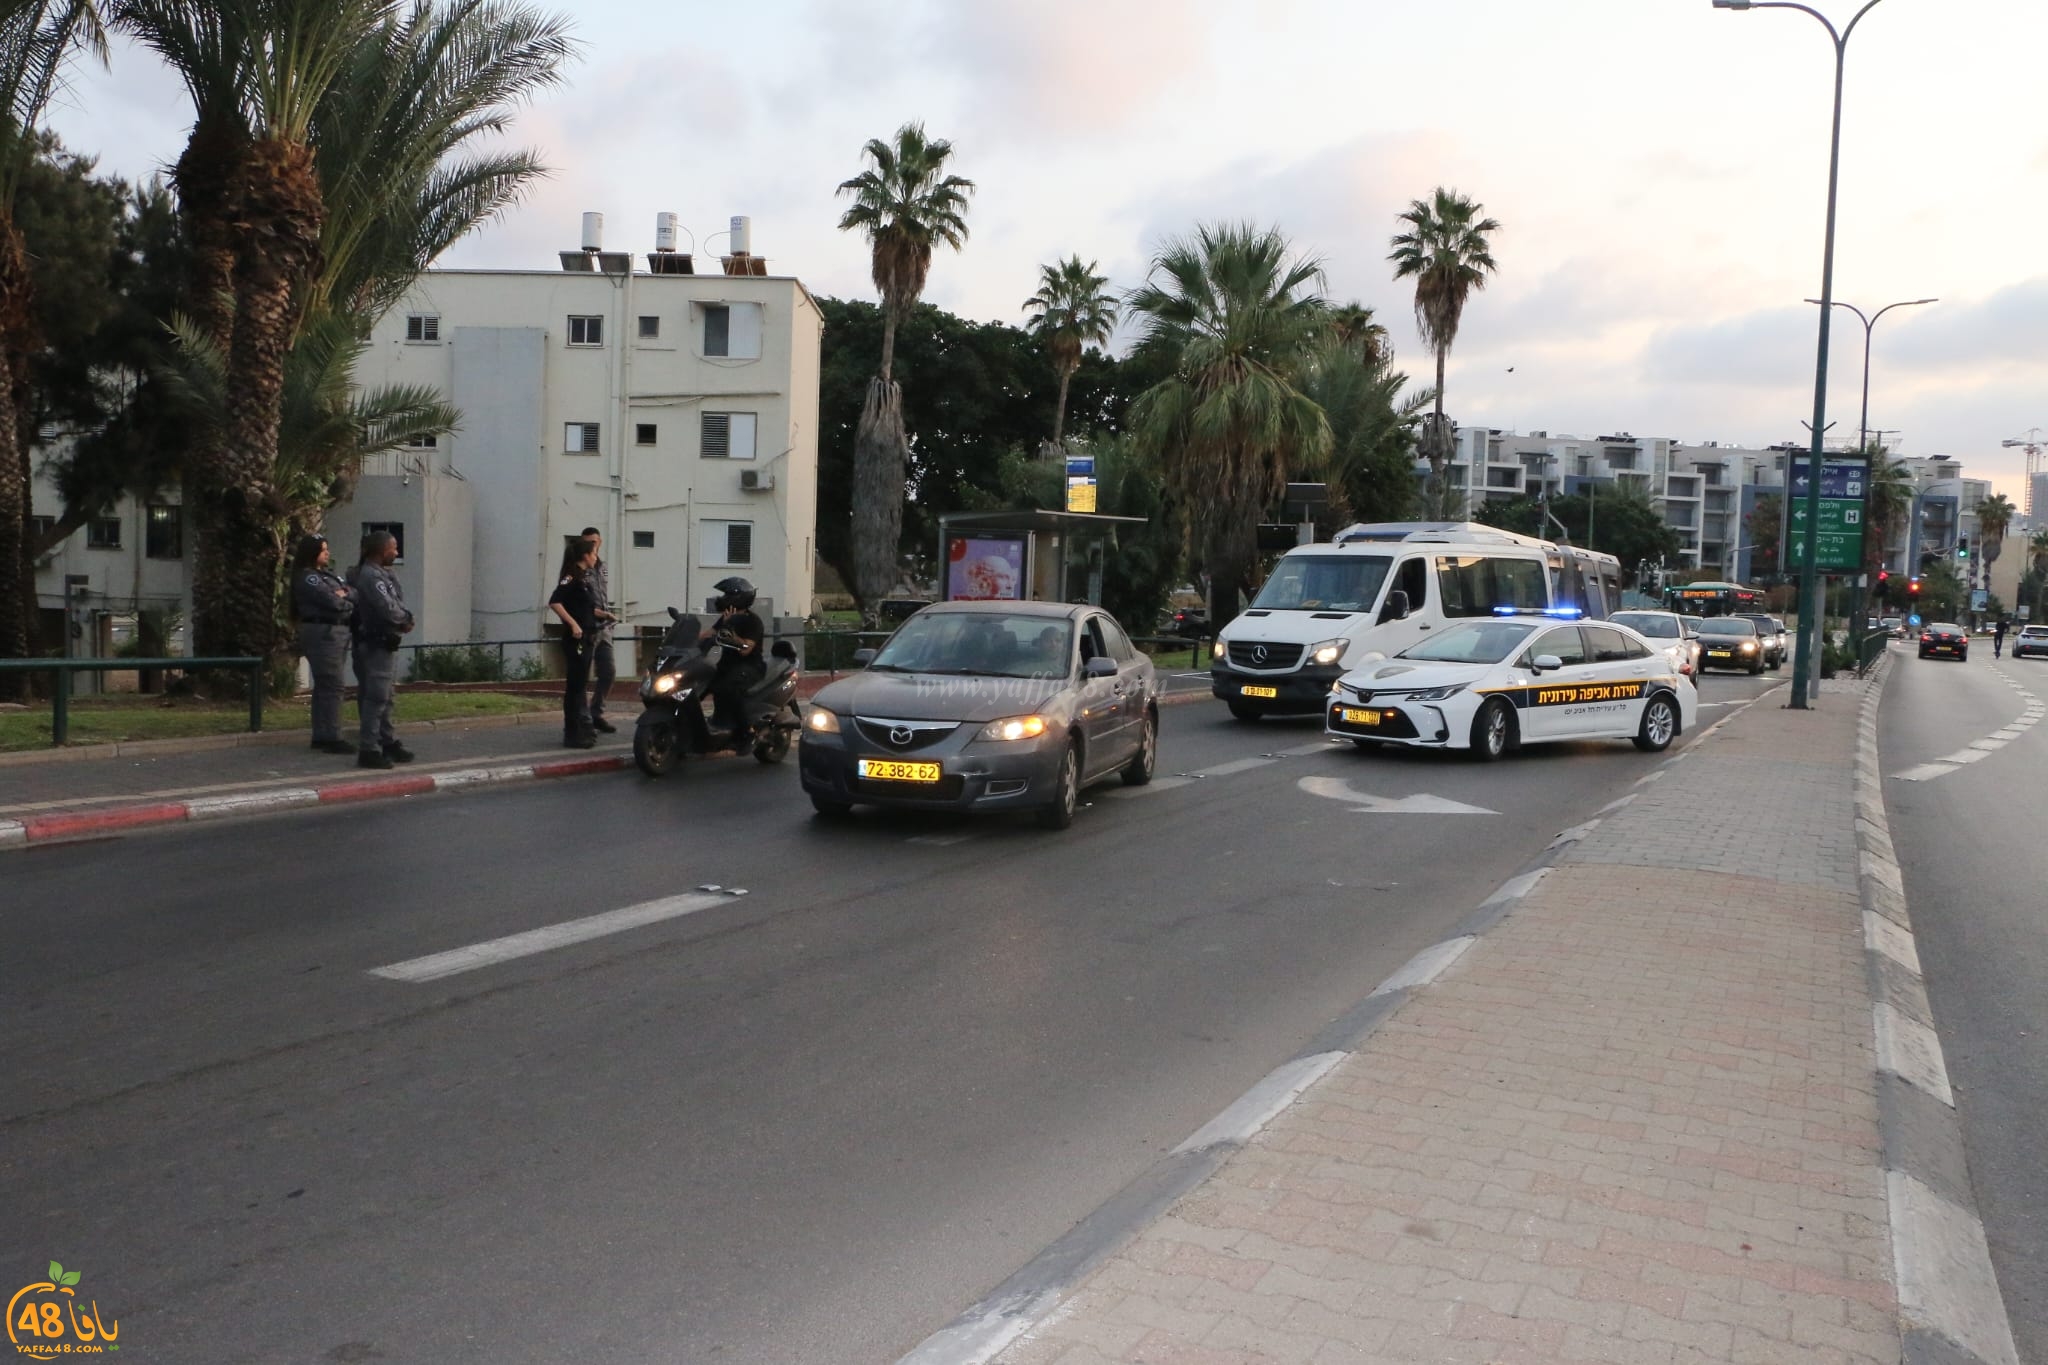  يافا: انتشار مكثّف لشرطة السير في مفترقات المدينة